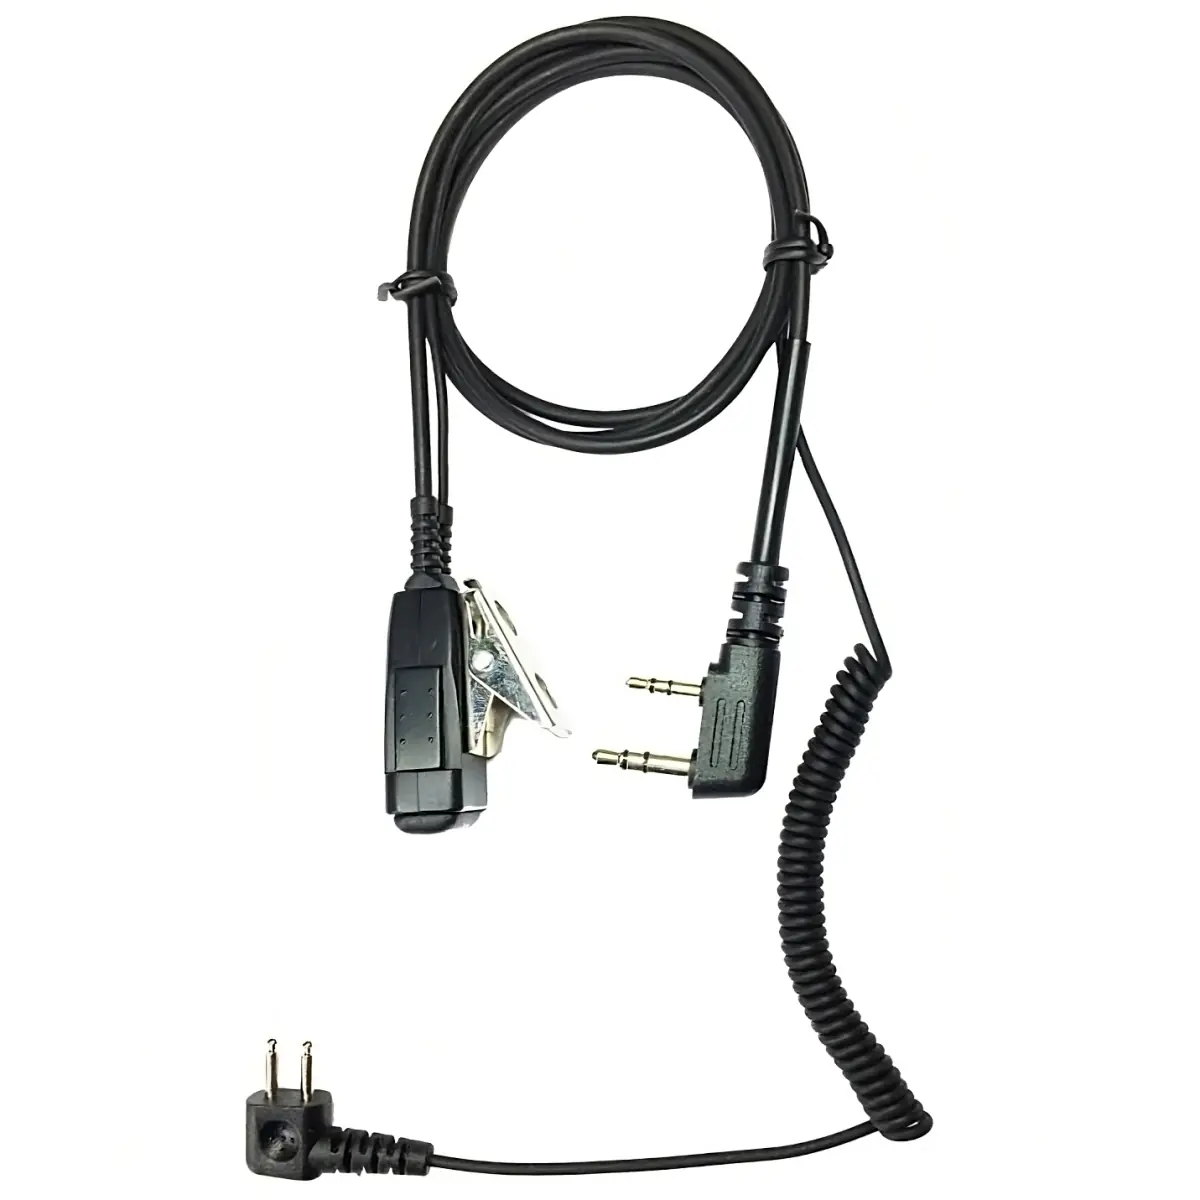 Kabel voor headset 3M Peltor (SportTac, ...) naar Portofoons Kenwood TK-3501E, TK3701DE en Midland G10 Pro, G11 Pro, G13, CT590S, CT990-EB en Retevis RB618,RB637